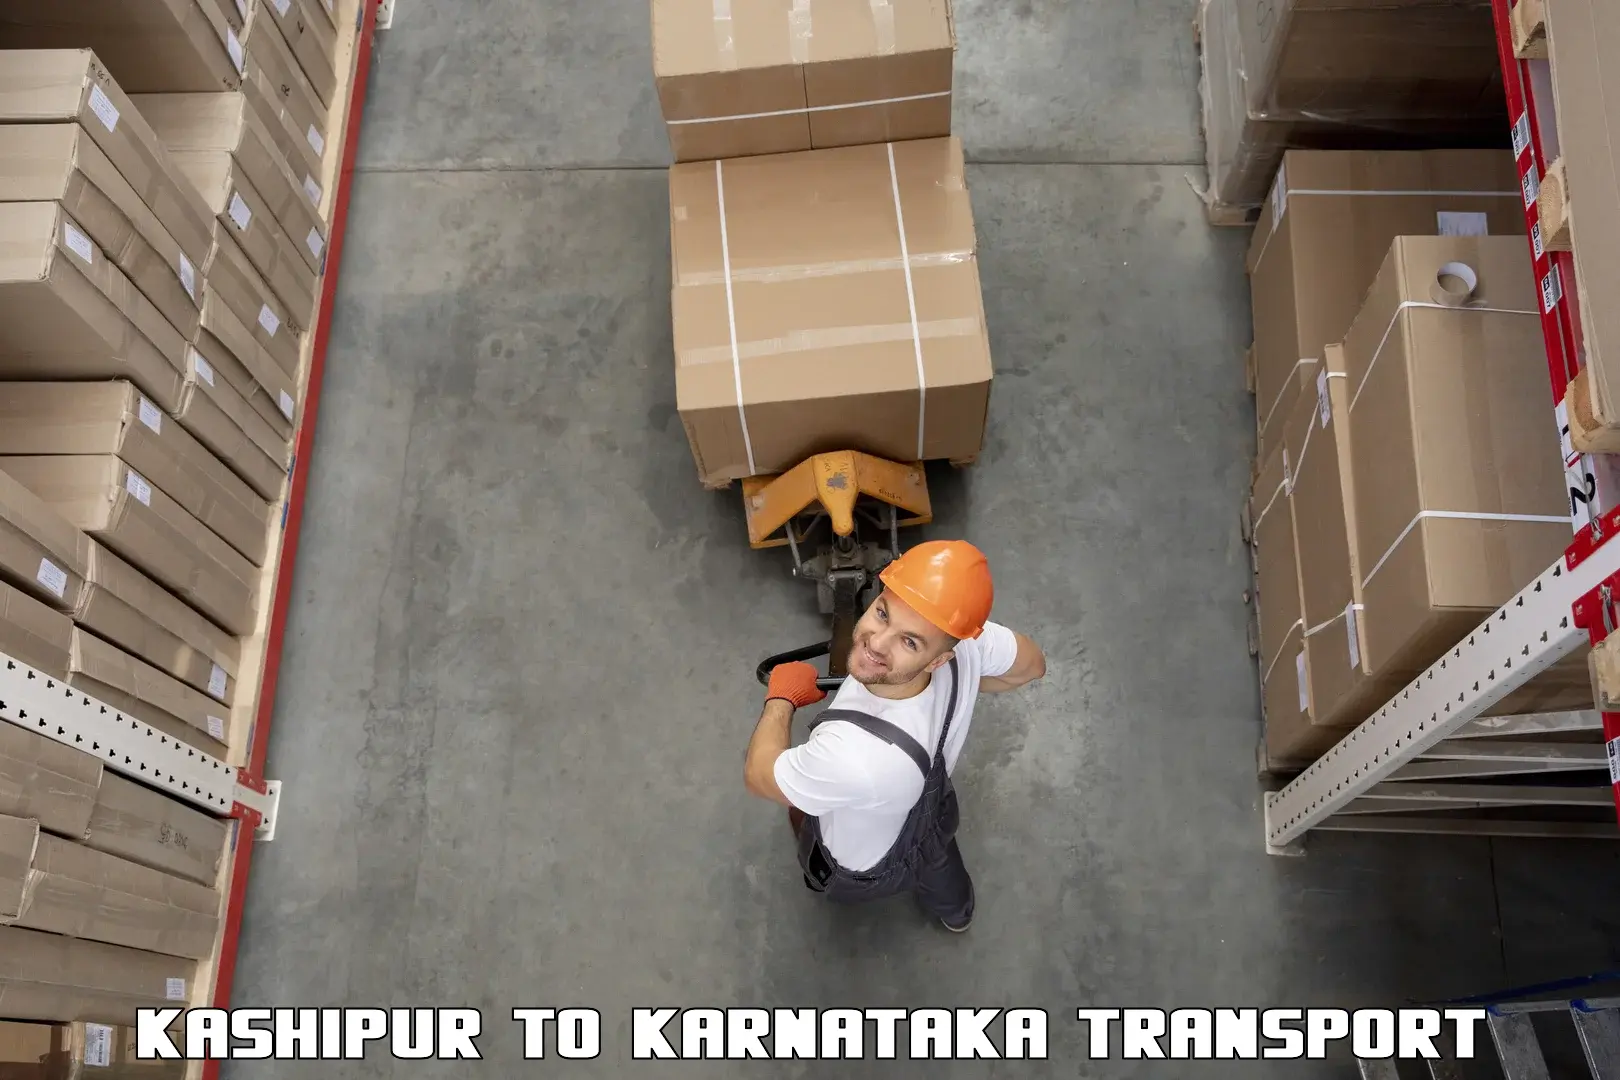 Road transport online services Kashipur to Lingasugur